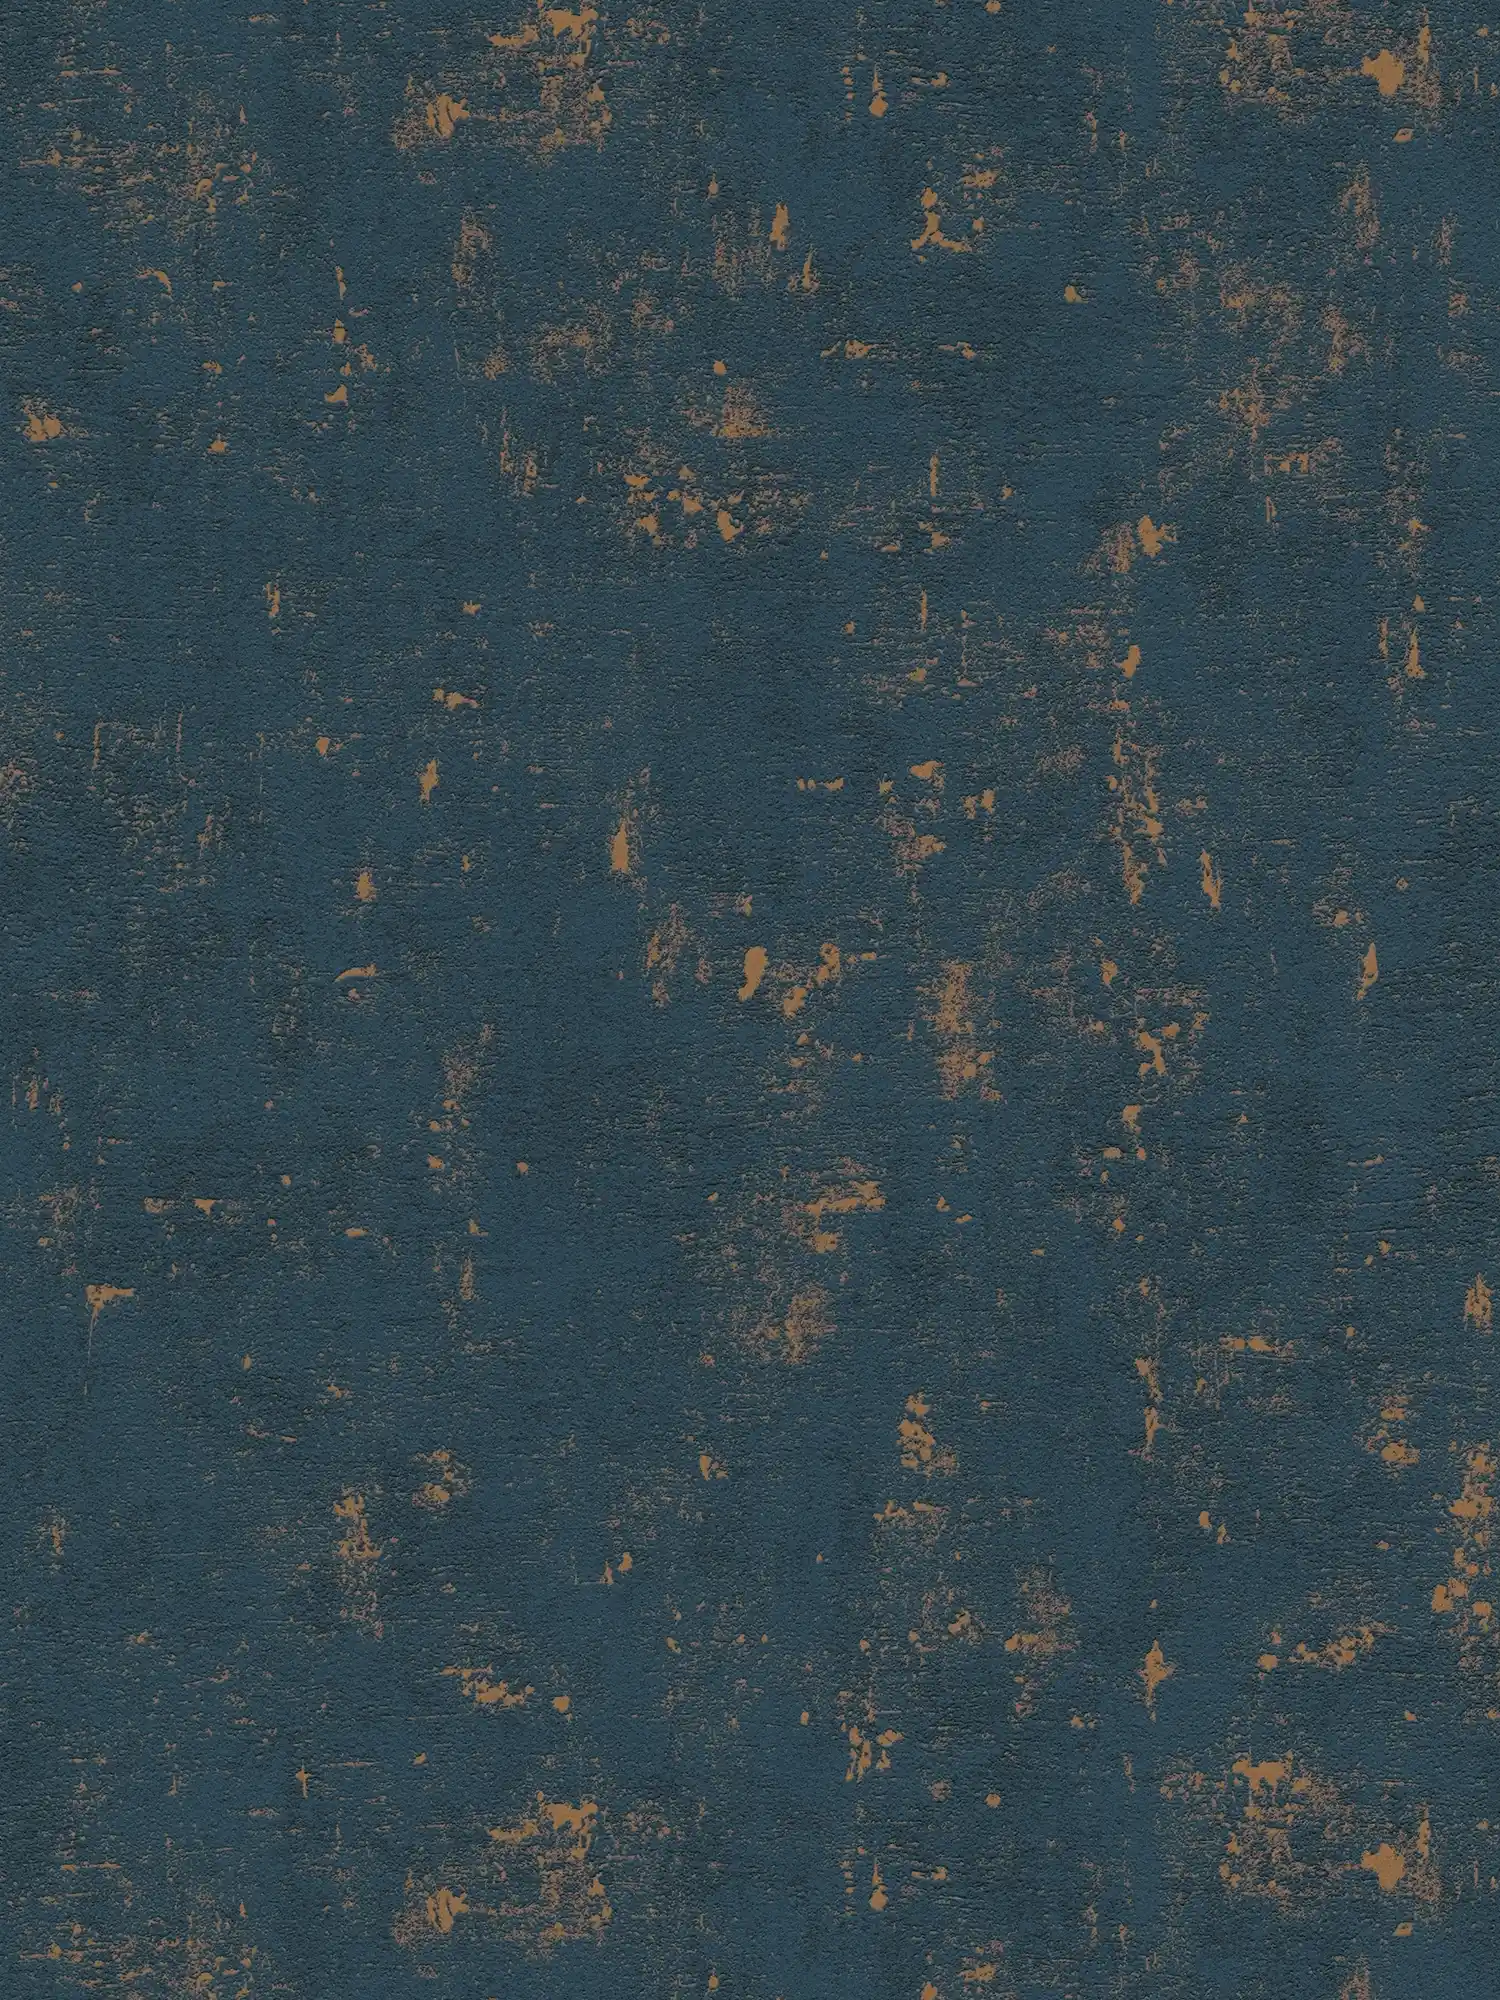 papier peint en papier à motifs de raphia avec effets métalliques - bleu foncé, or
